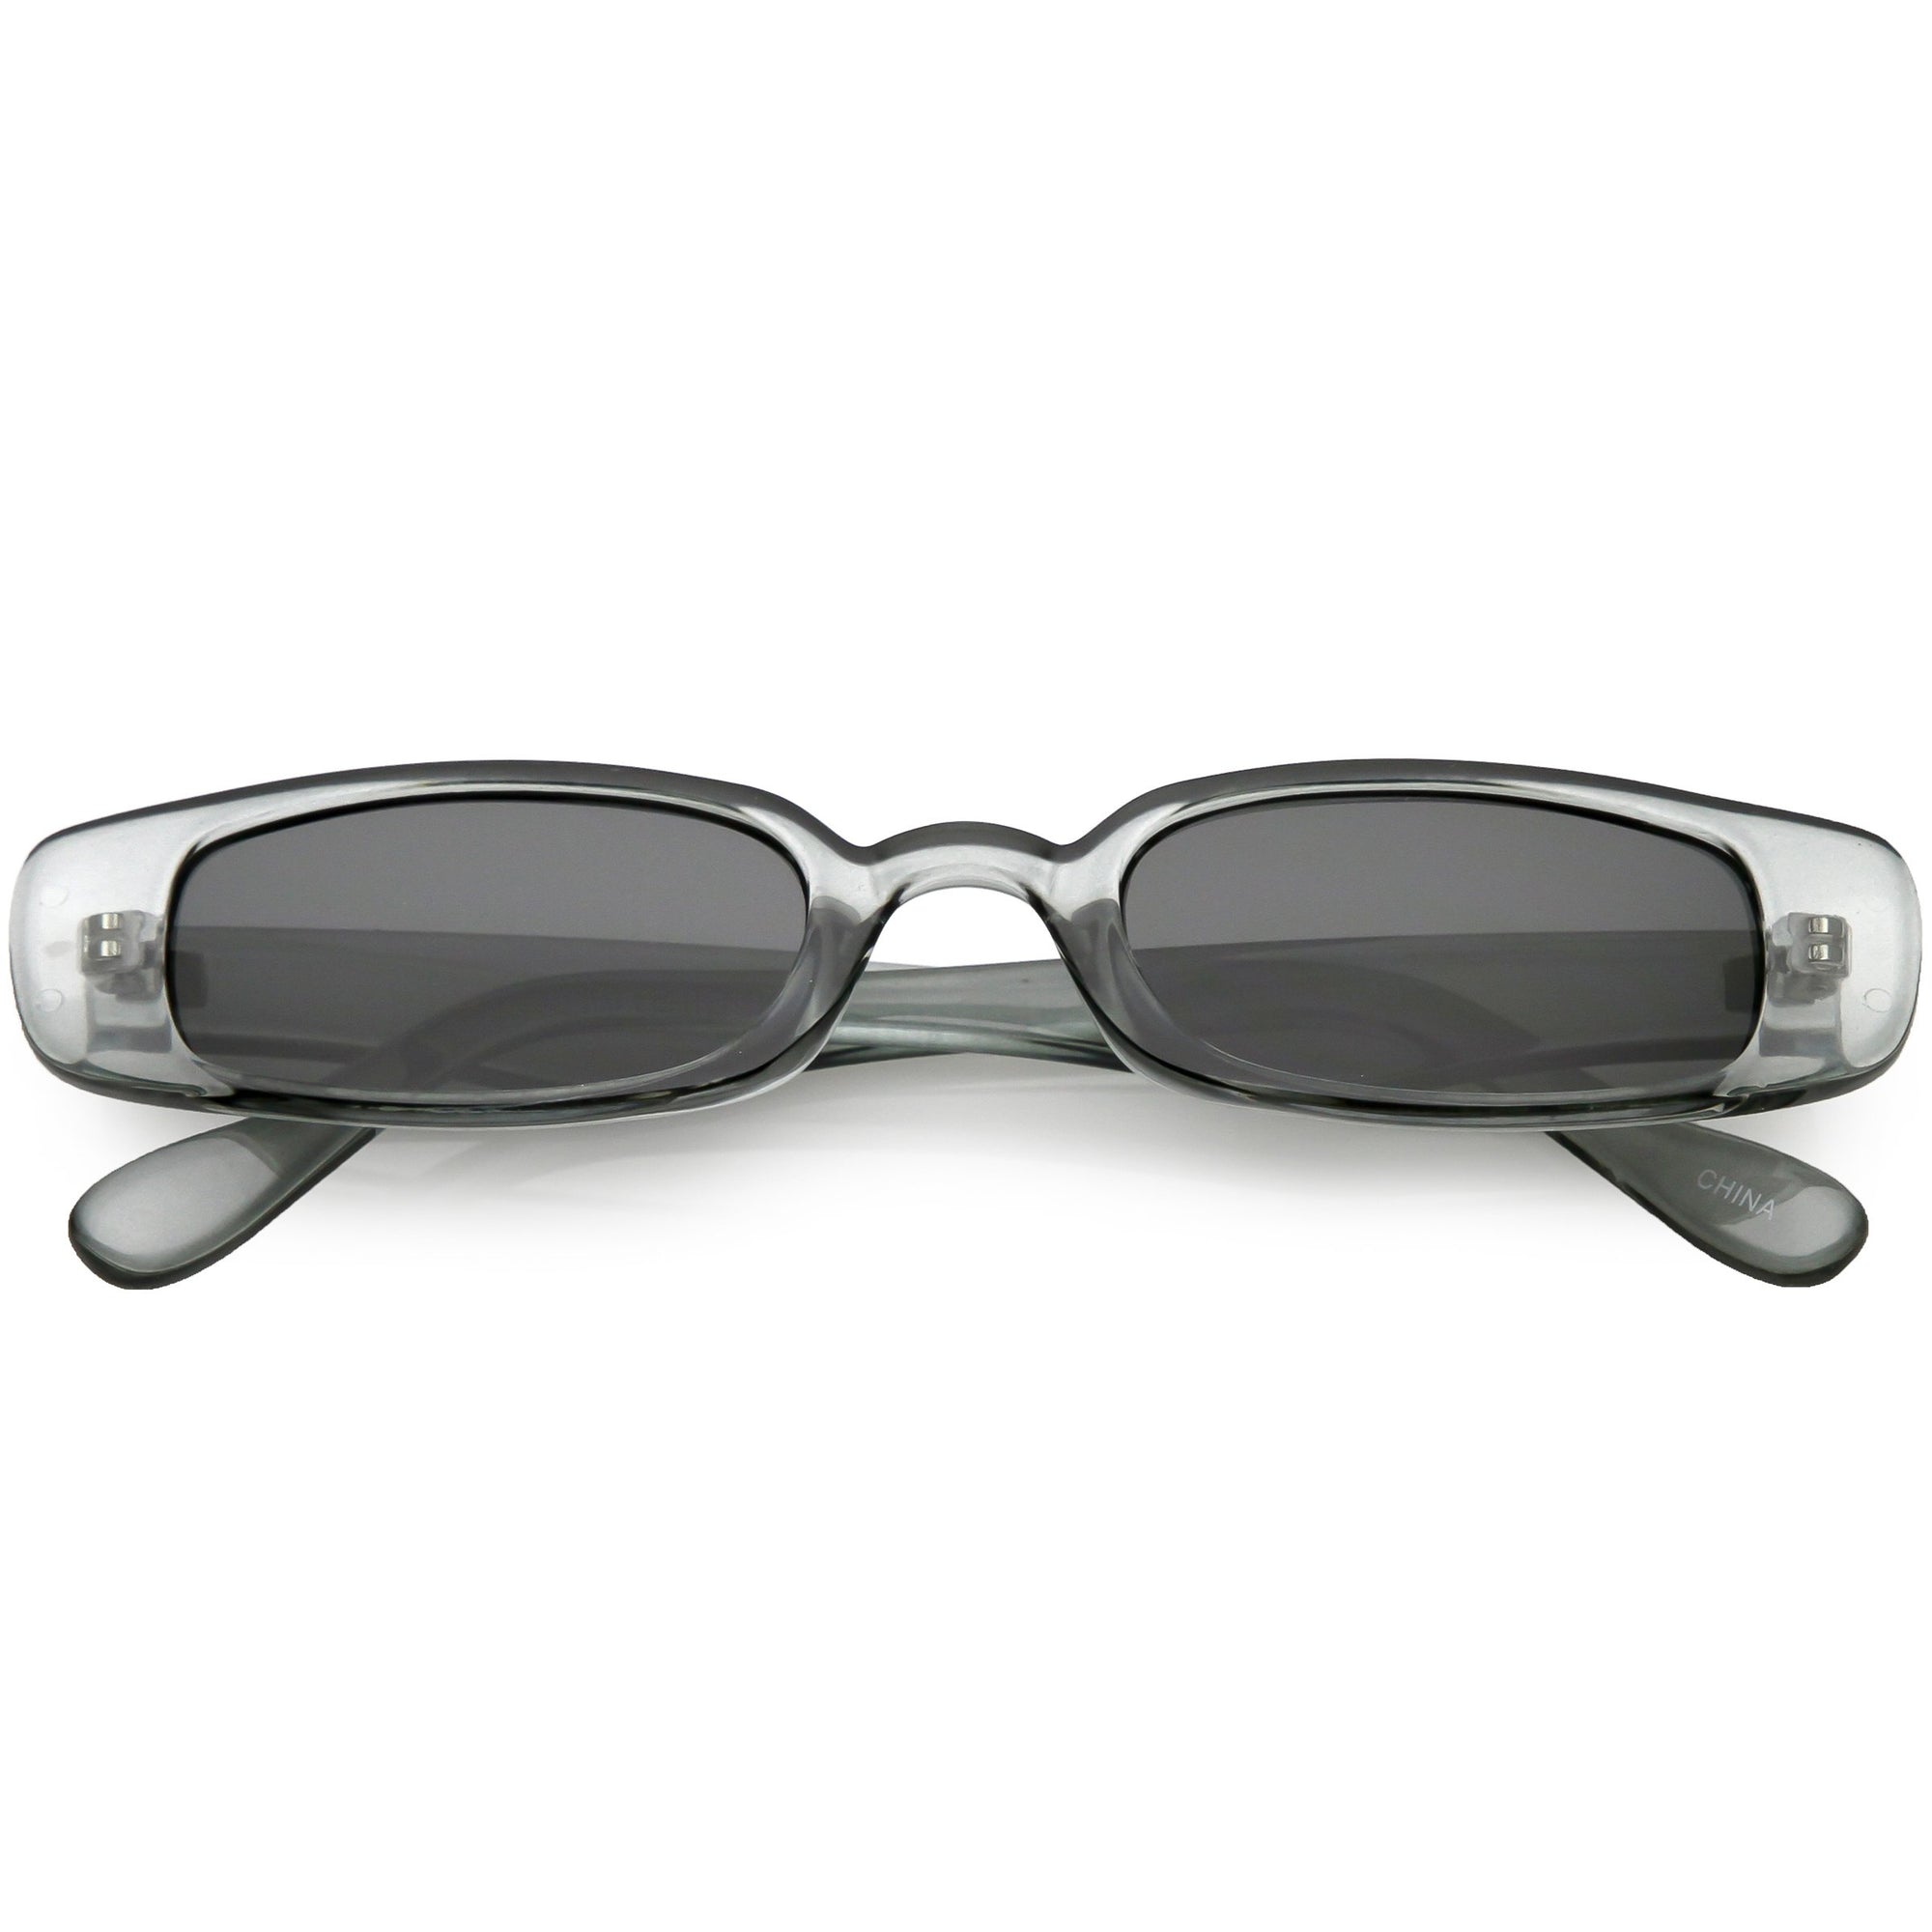 Retro 1990s Thin Rectangle Fashion Sunglasses Zerouv 